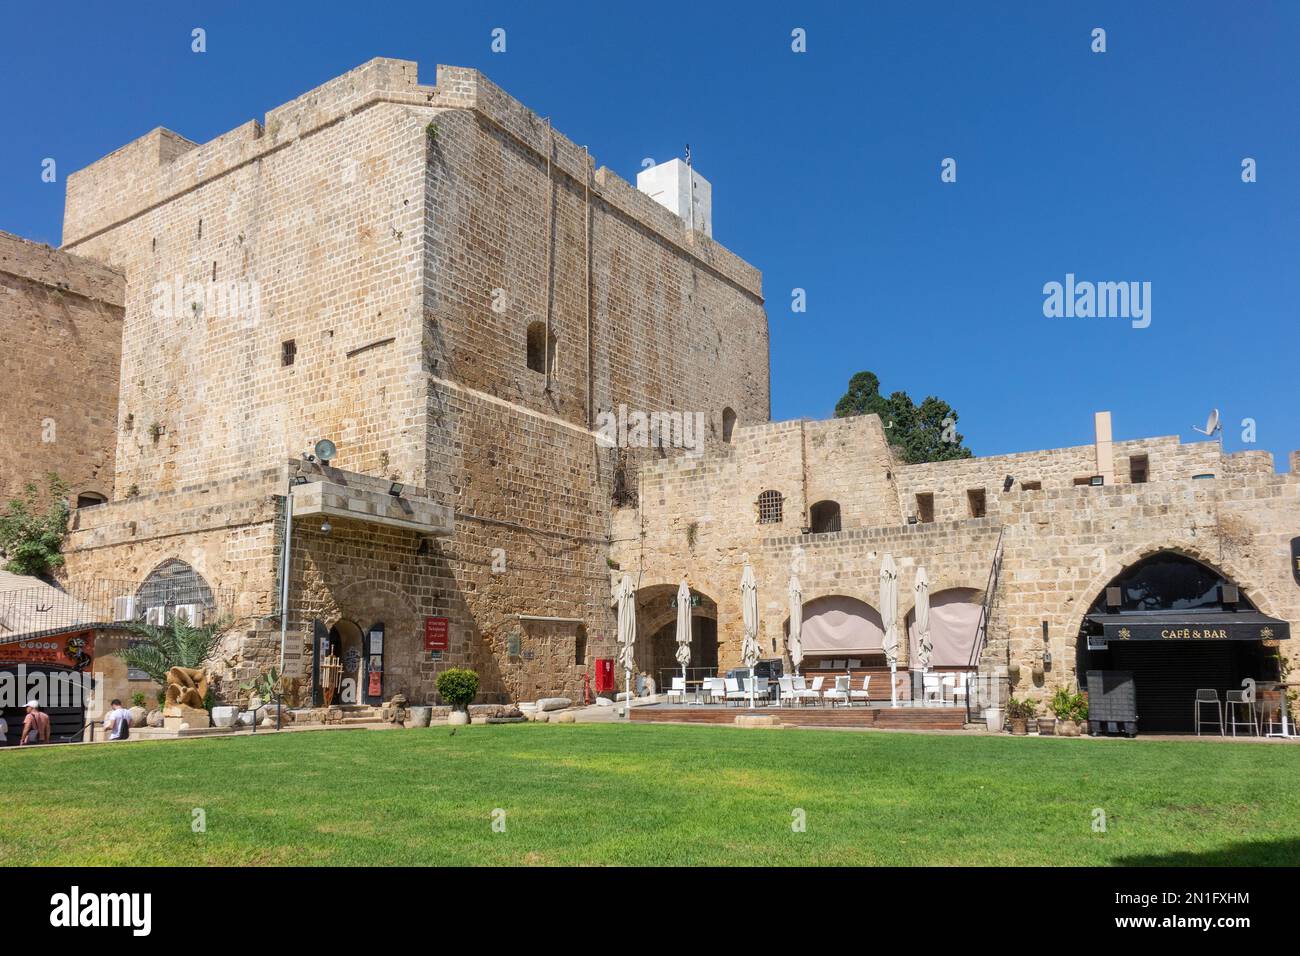 Citadelle, Acre (Akko), site du patrimoine mondial de l'UNESCO, Israël, Moyen-Orient Banque D'Images